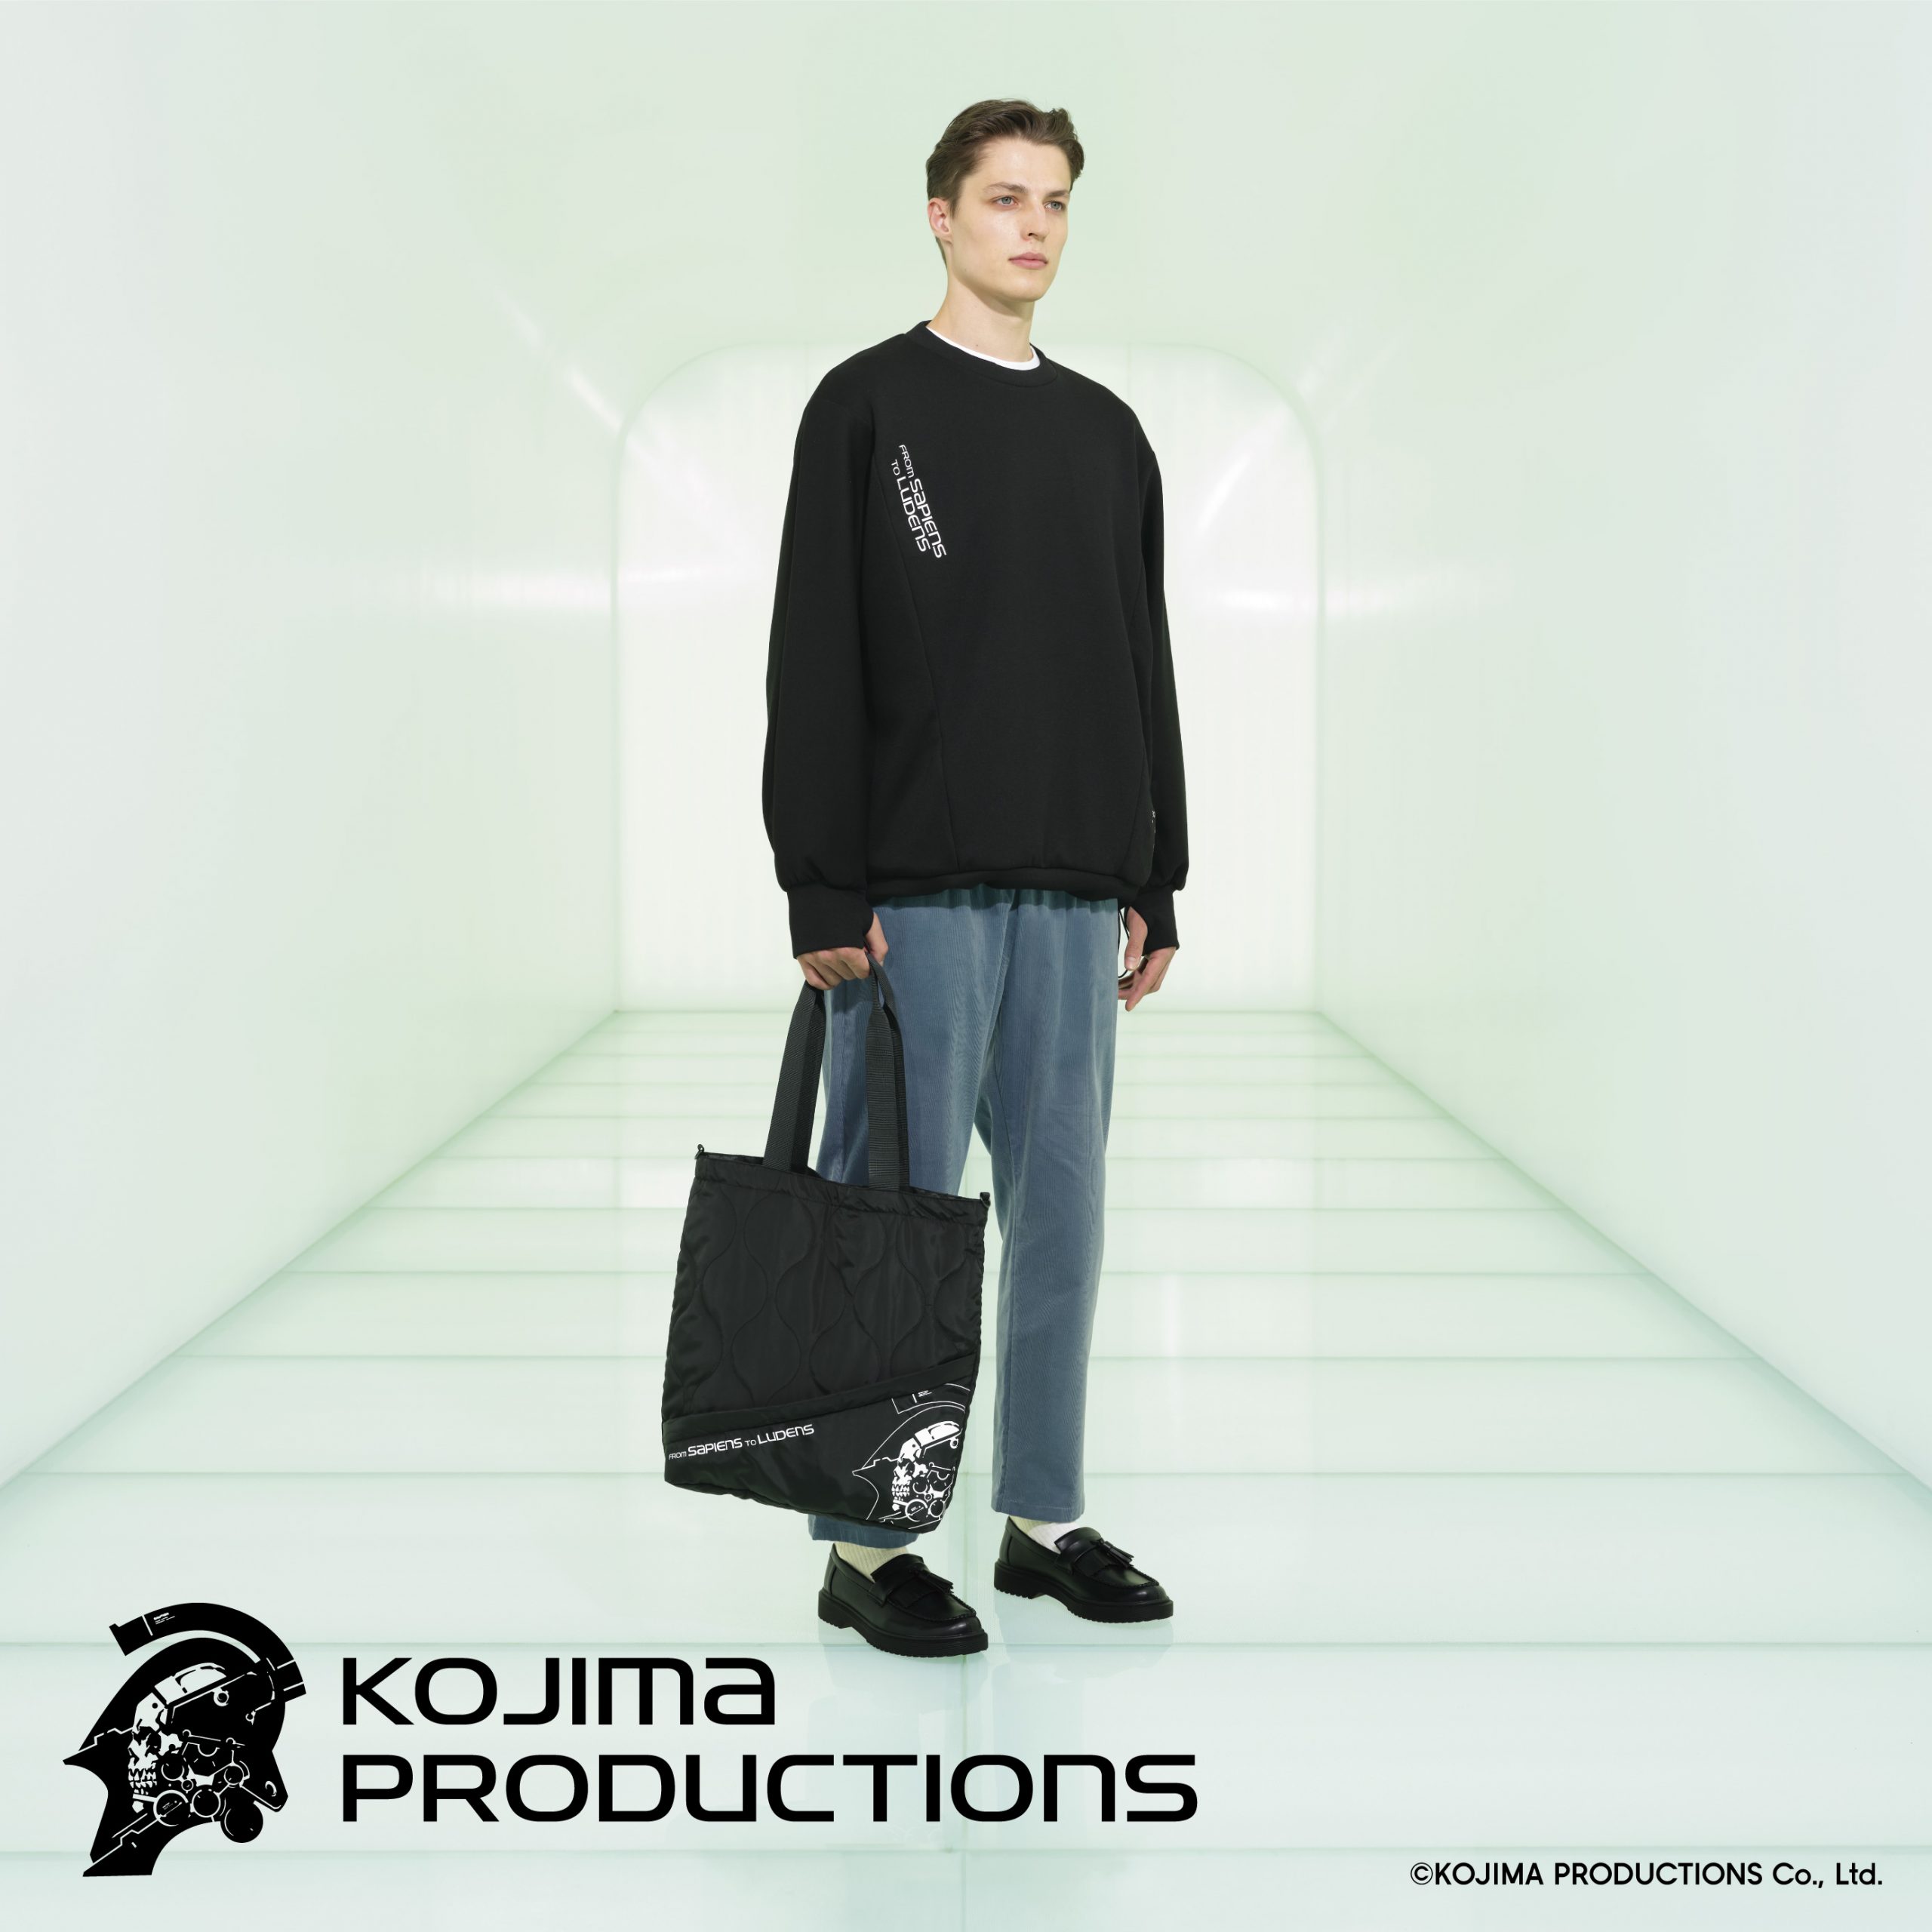 聯名系列共有9款男裝單品及配件，以「近未來」為主題，並將「KOJIMA PRODUCTIONS」美術總監－新川洋司的作品作為設計元素。